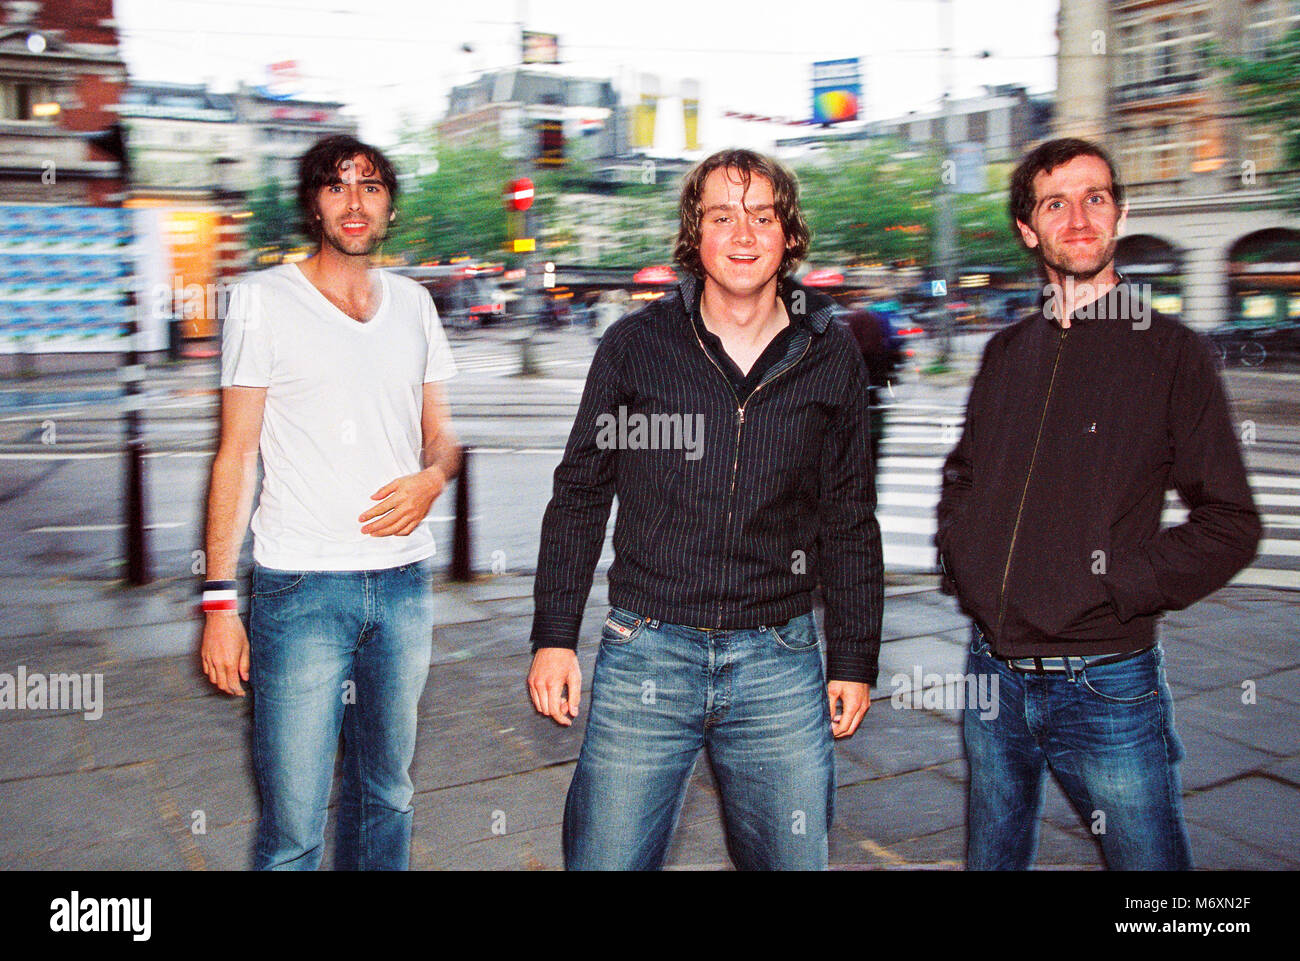 Groupe anglais Keane photographié dans Leidsekade, Amsterdam 7e juillet 2004, Pays-Bas, Europe Banque D'Images